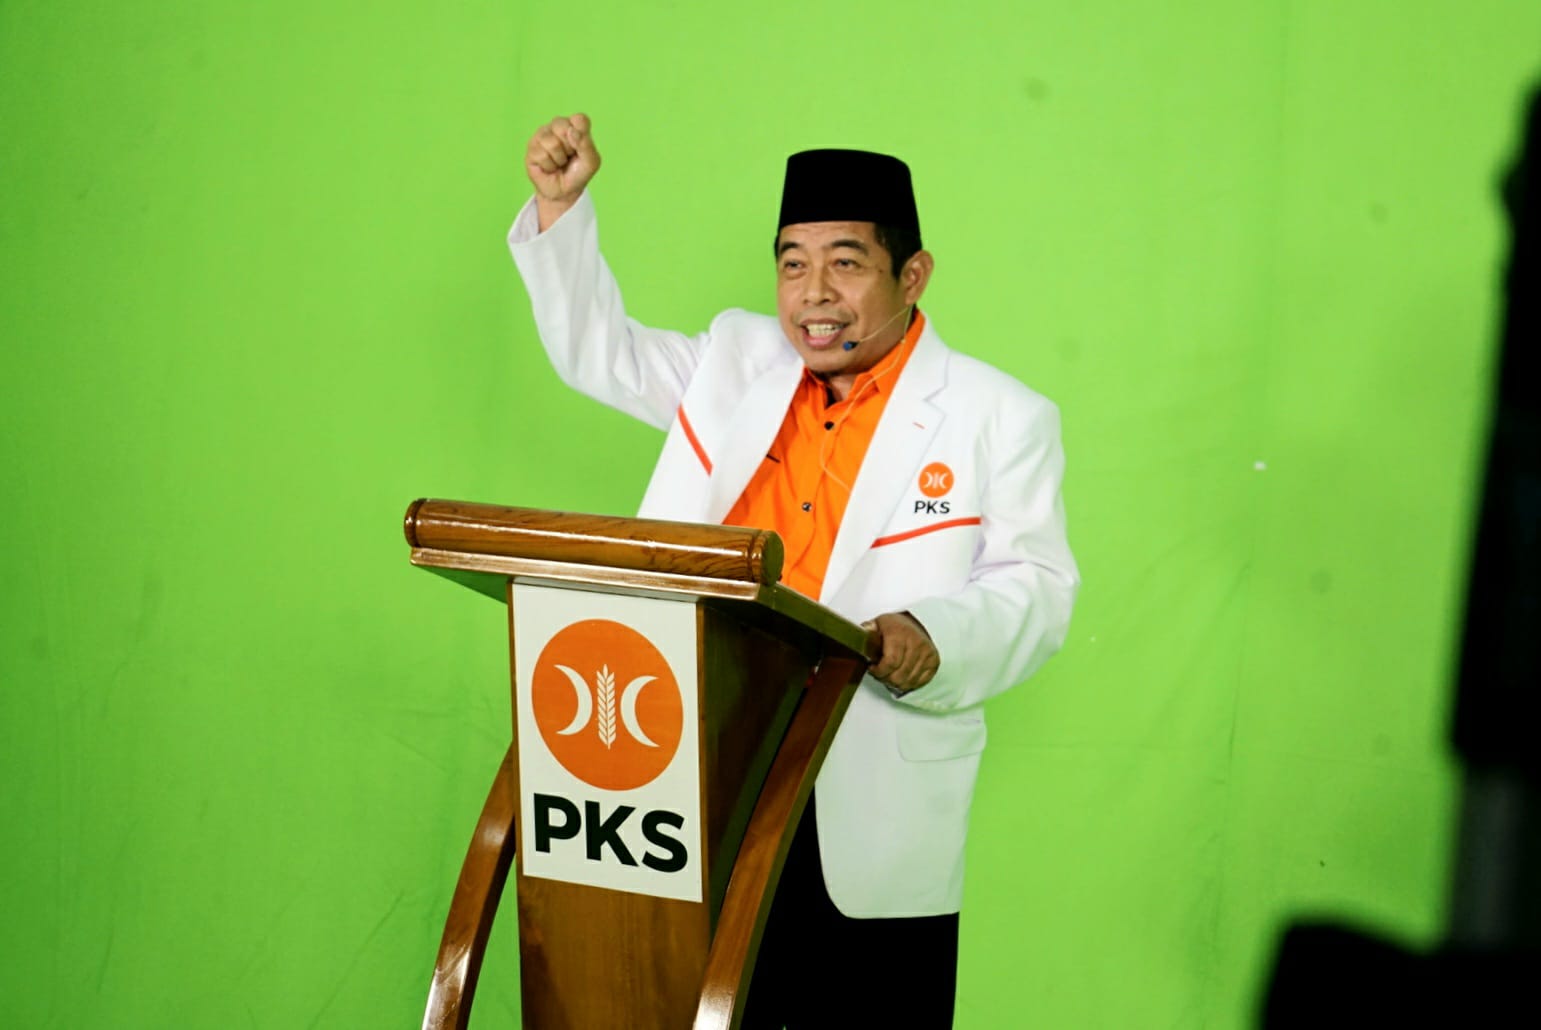 Ketua Dewan Pimpinan Wilayah (DPW) Partai Keadilan Sejahtera (PKS) DKI Jakarta, Khoirudin, menyatakan bahwa keputusan terkait pemilihan calon (Sumber foto : DPW PKS Jakarta)